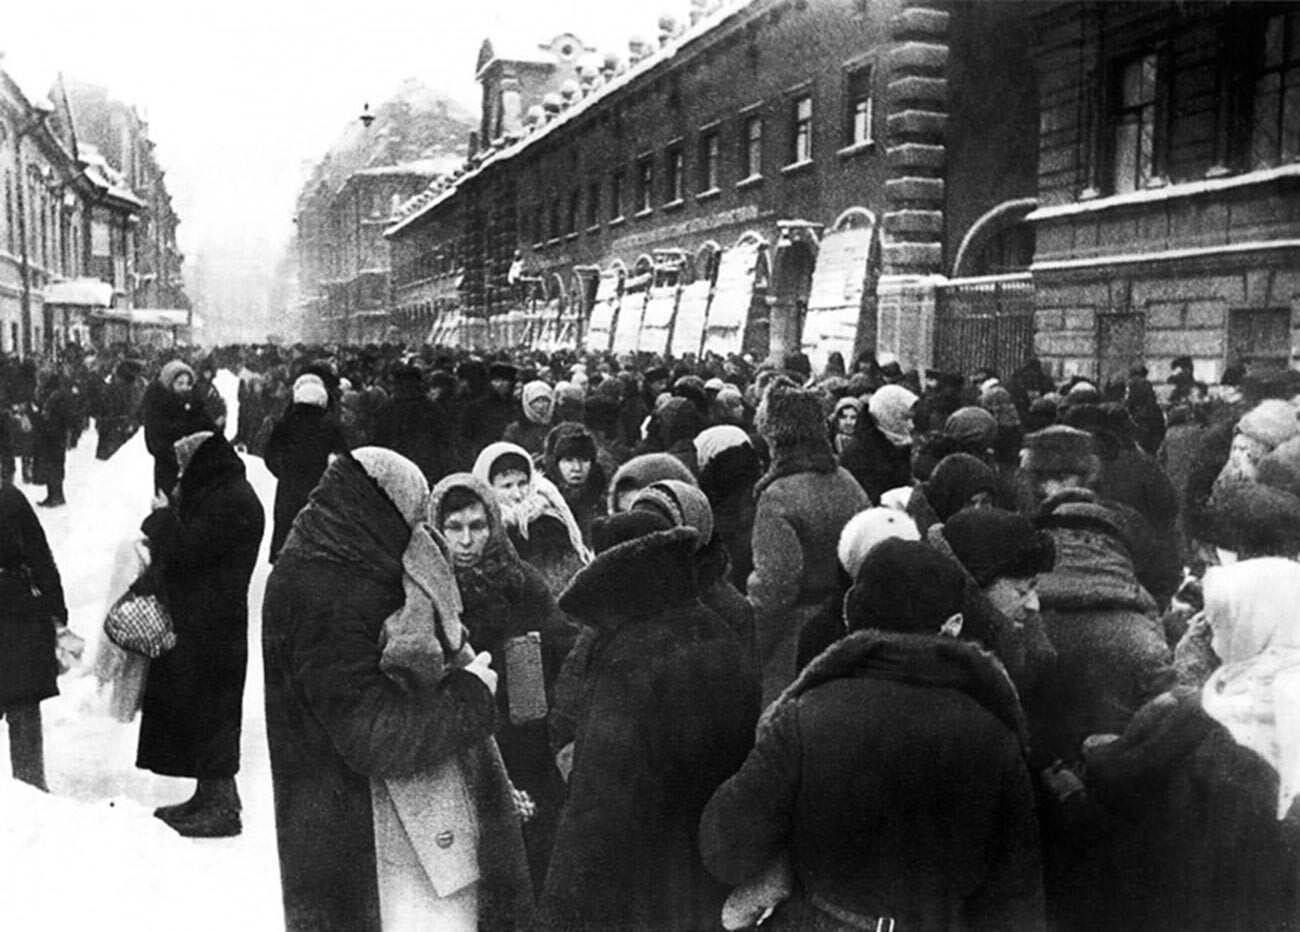 Толкучка у Кузнечного рынка в блокадном Ленинграде, зима 1941-1942 гг.